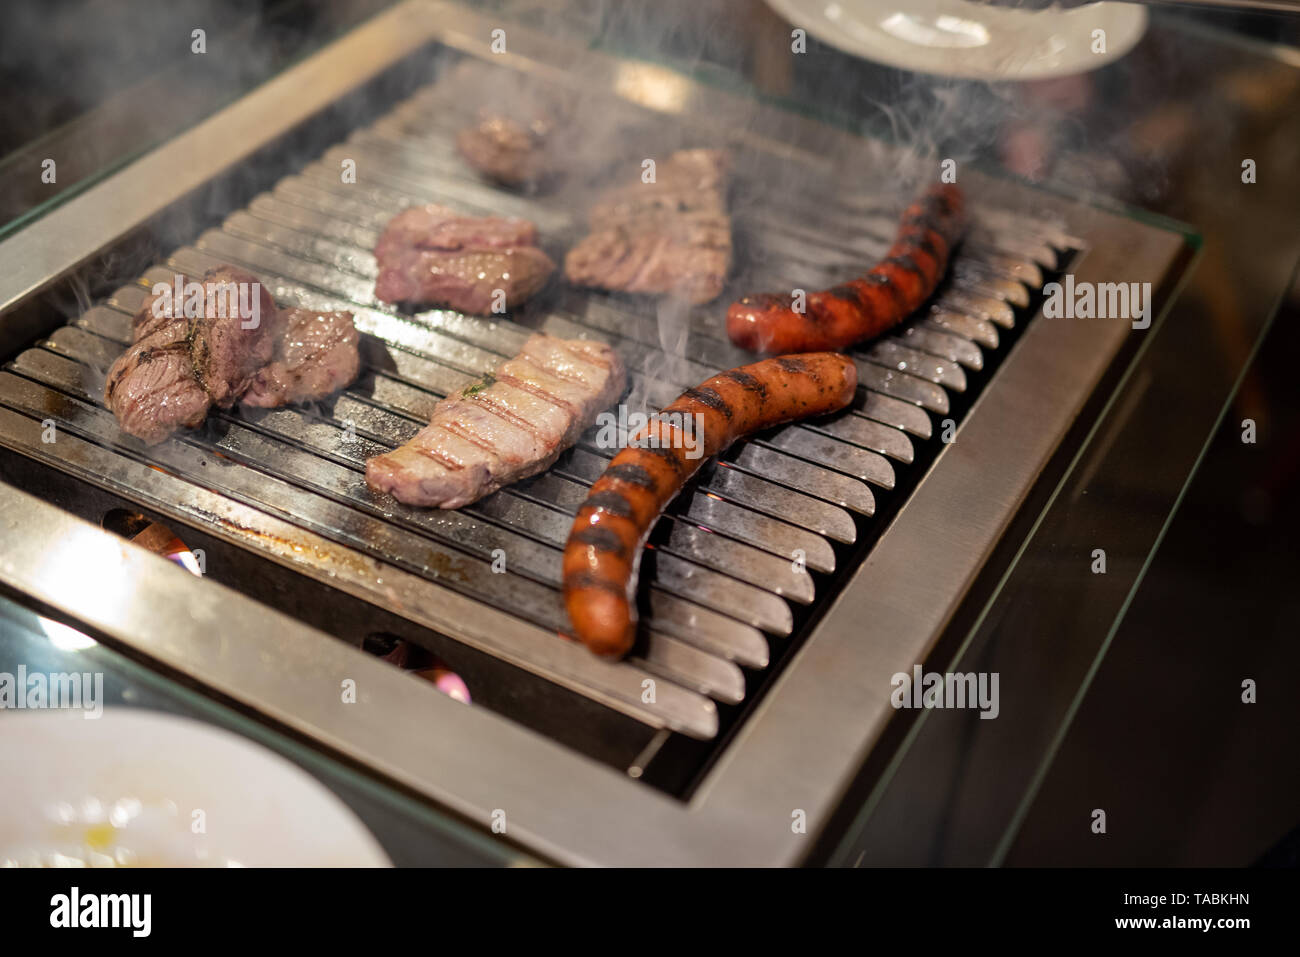 Différents types de viande de bœuf, des steaks et des saucisses de porc, cuits sur un barbecue piscine Banque D'Images